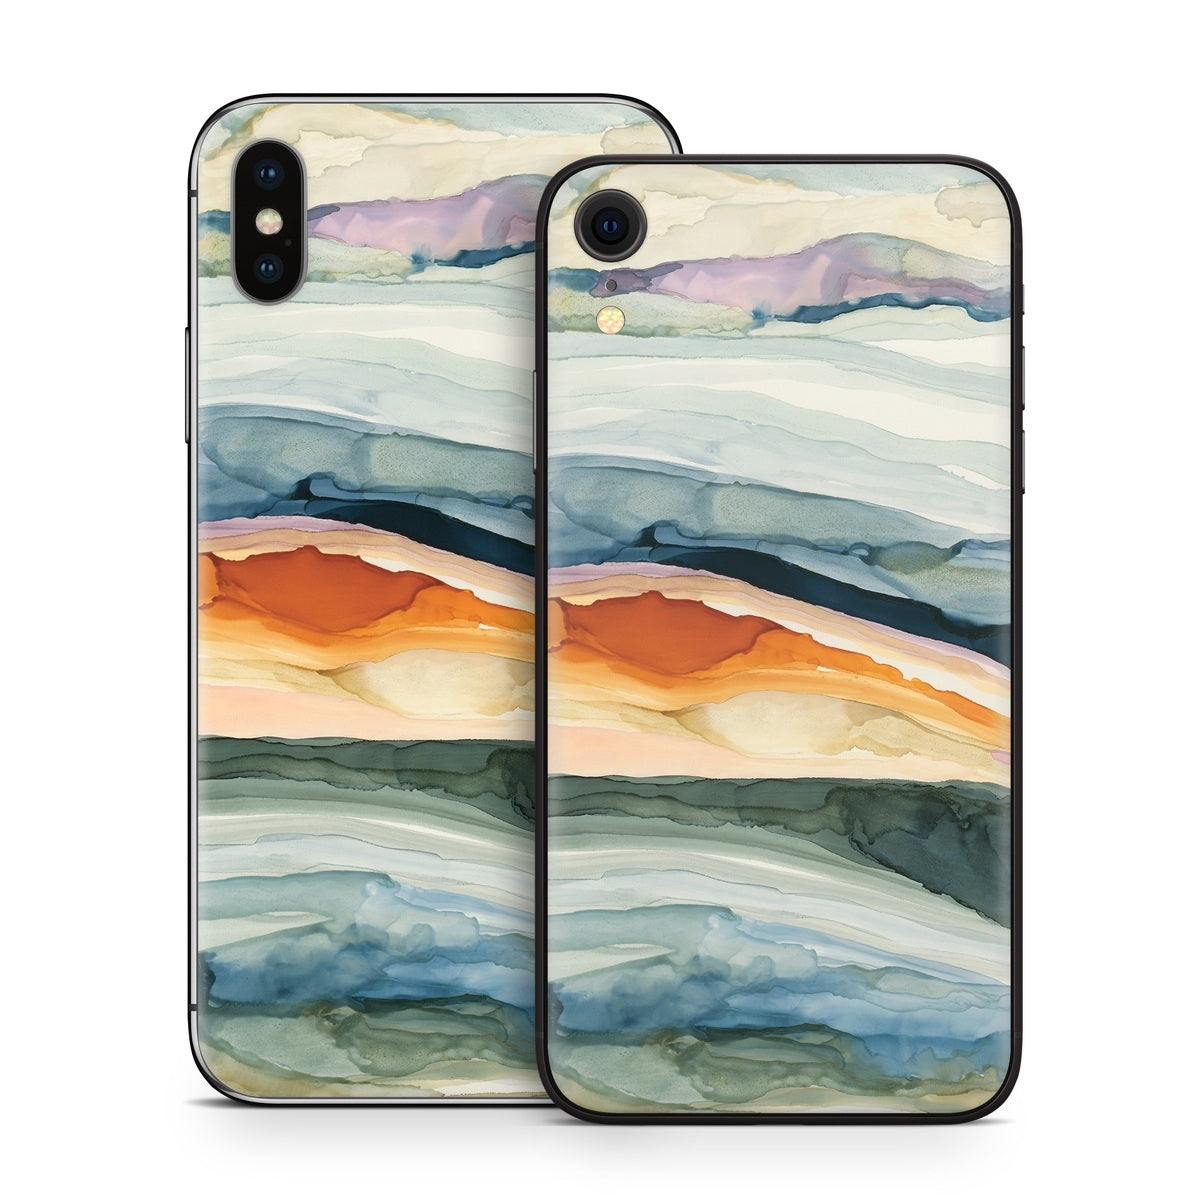 Layered Earth - Apple iPhone X Skin